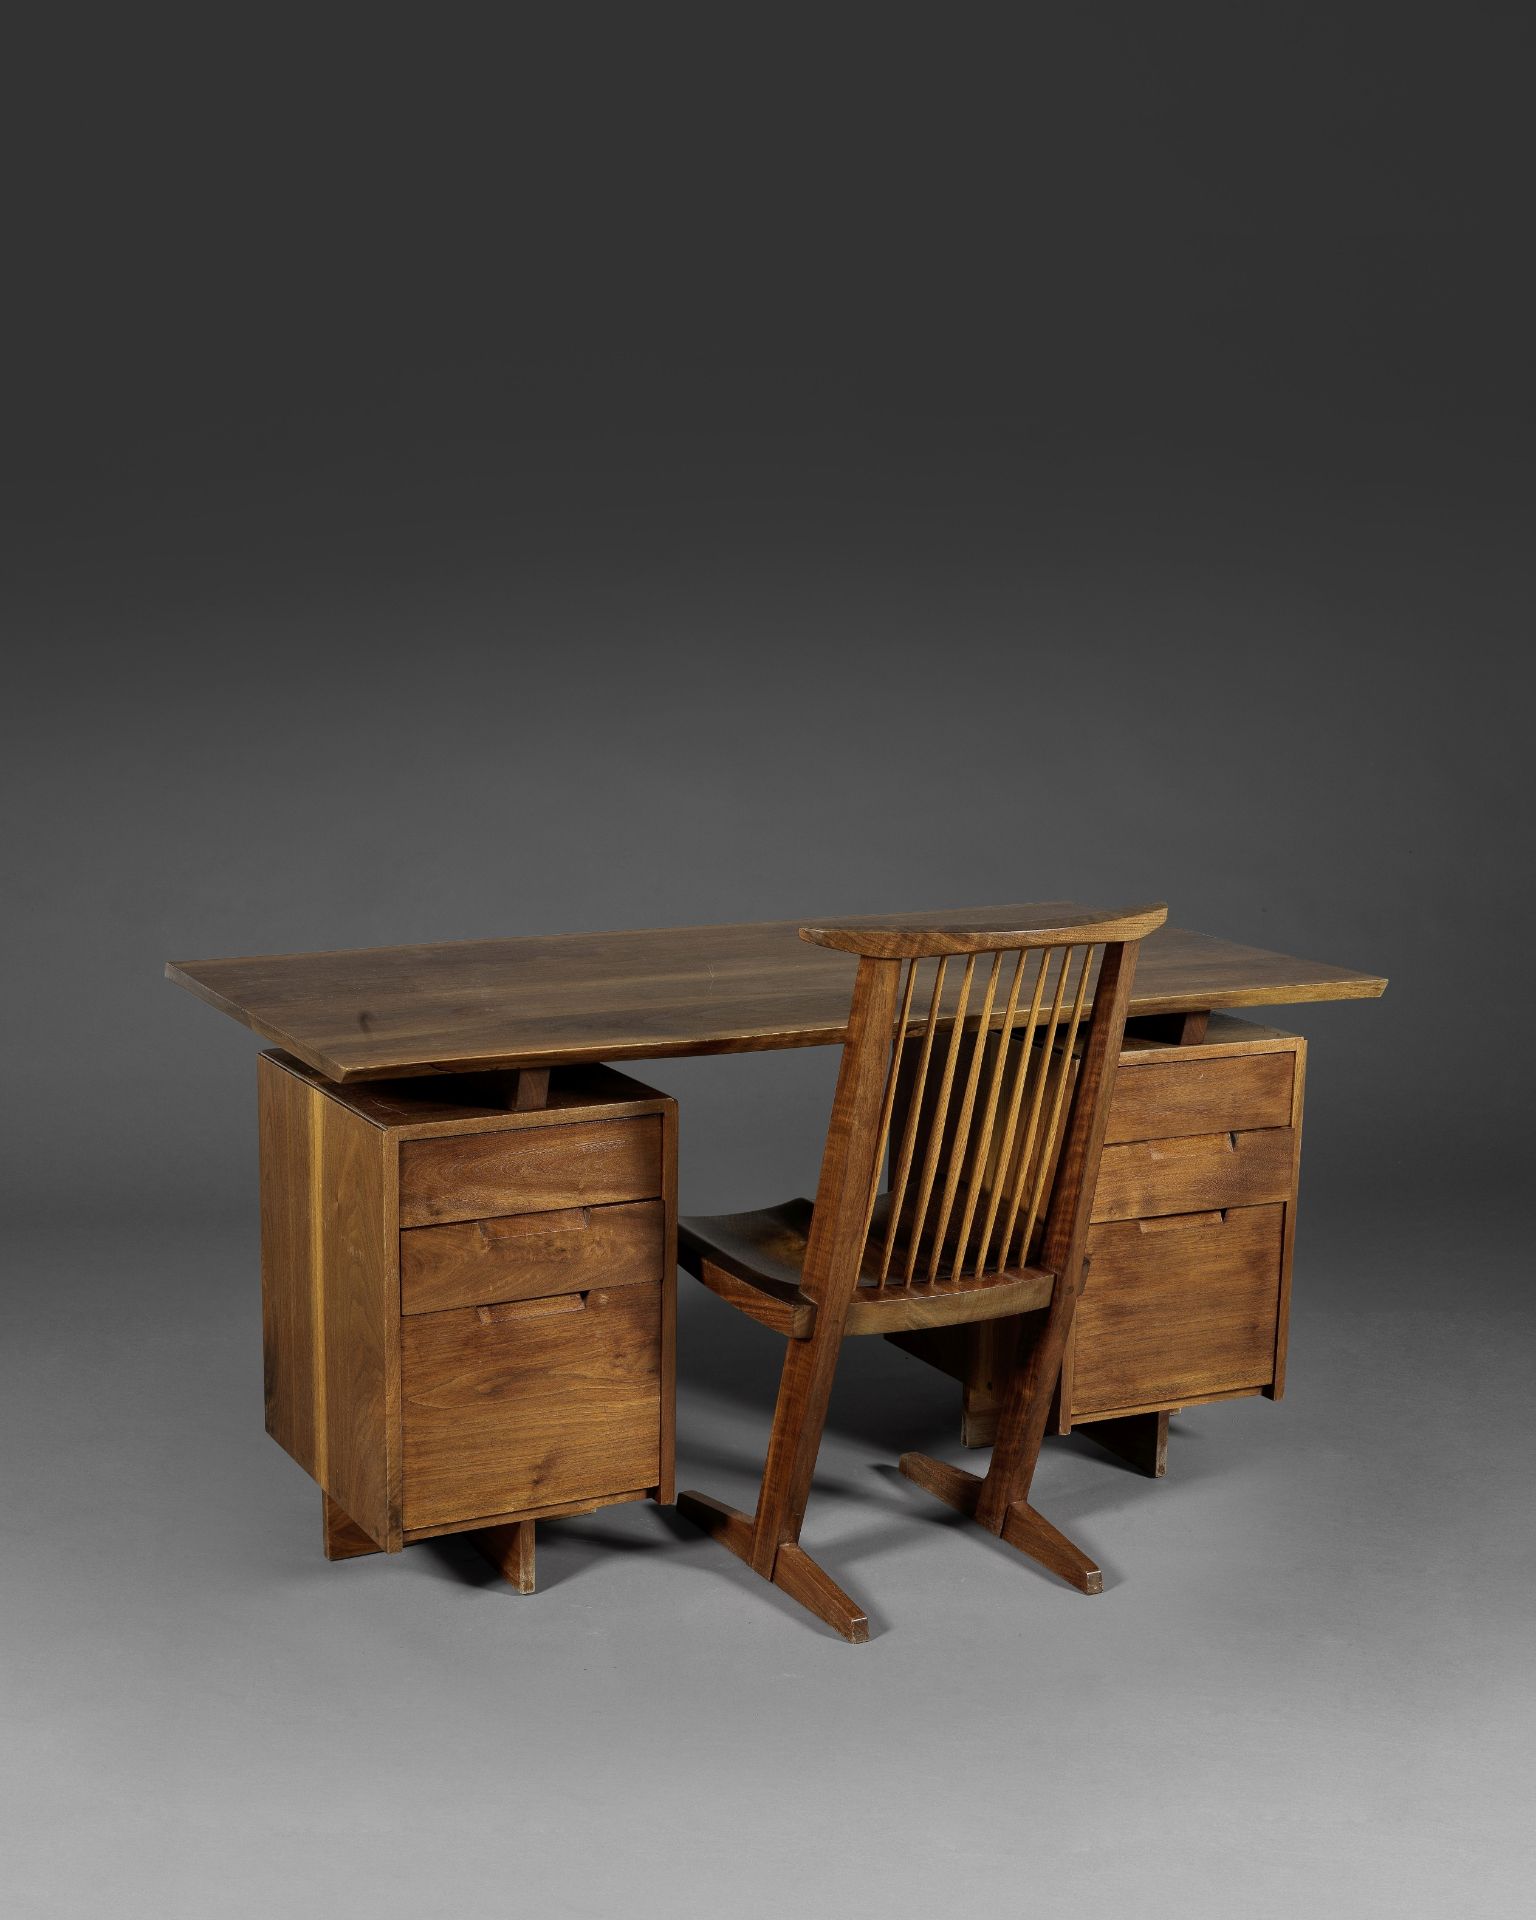 GEORGE NAKASHIMA (1905-1990) Ensemble comprenant un bureau Double Pedestal et une chaise ConoidL...